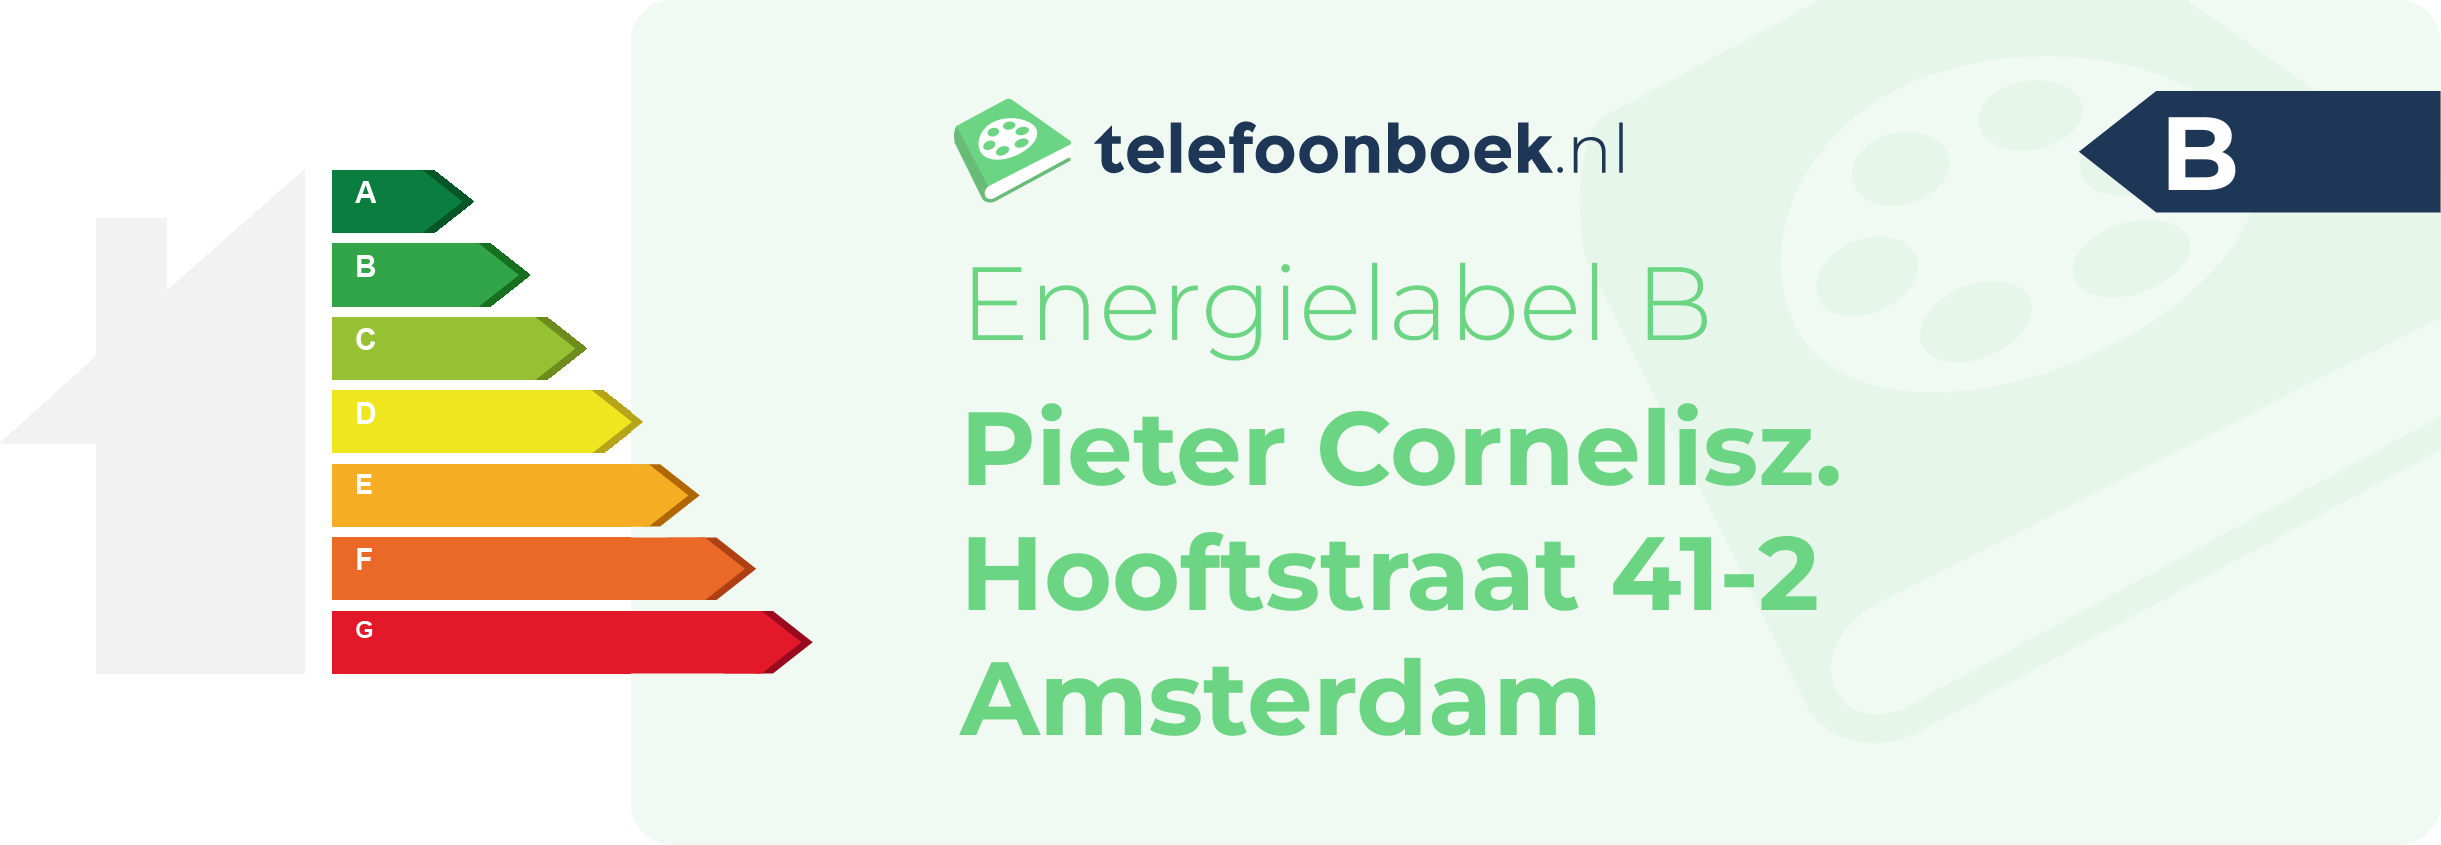 Energielabel Pieter Cornelisz. Hooftstraat 41-2 Amsterdam